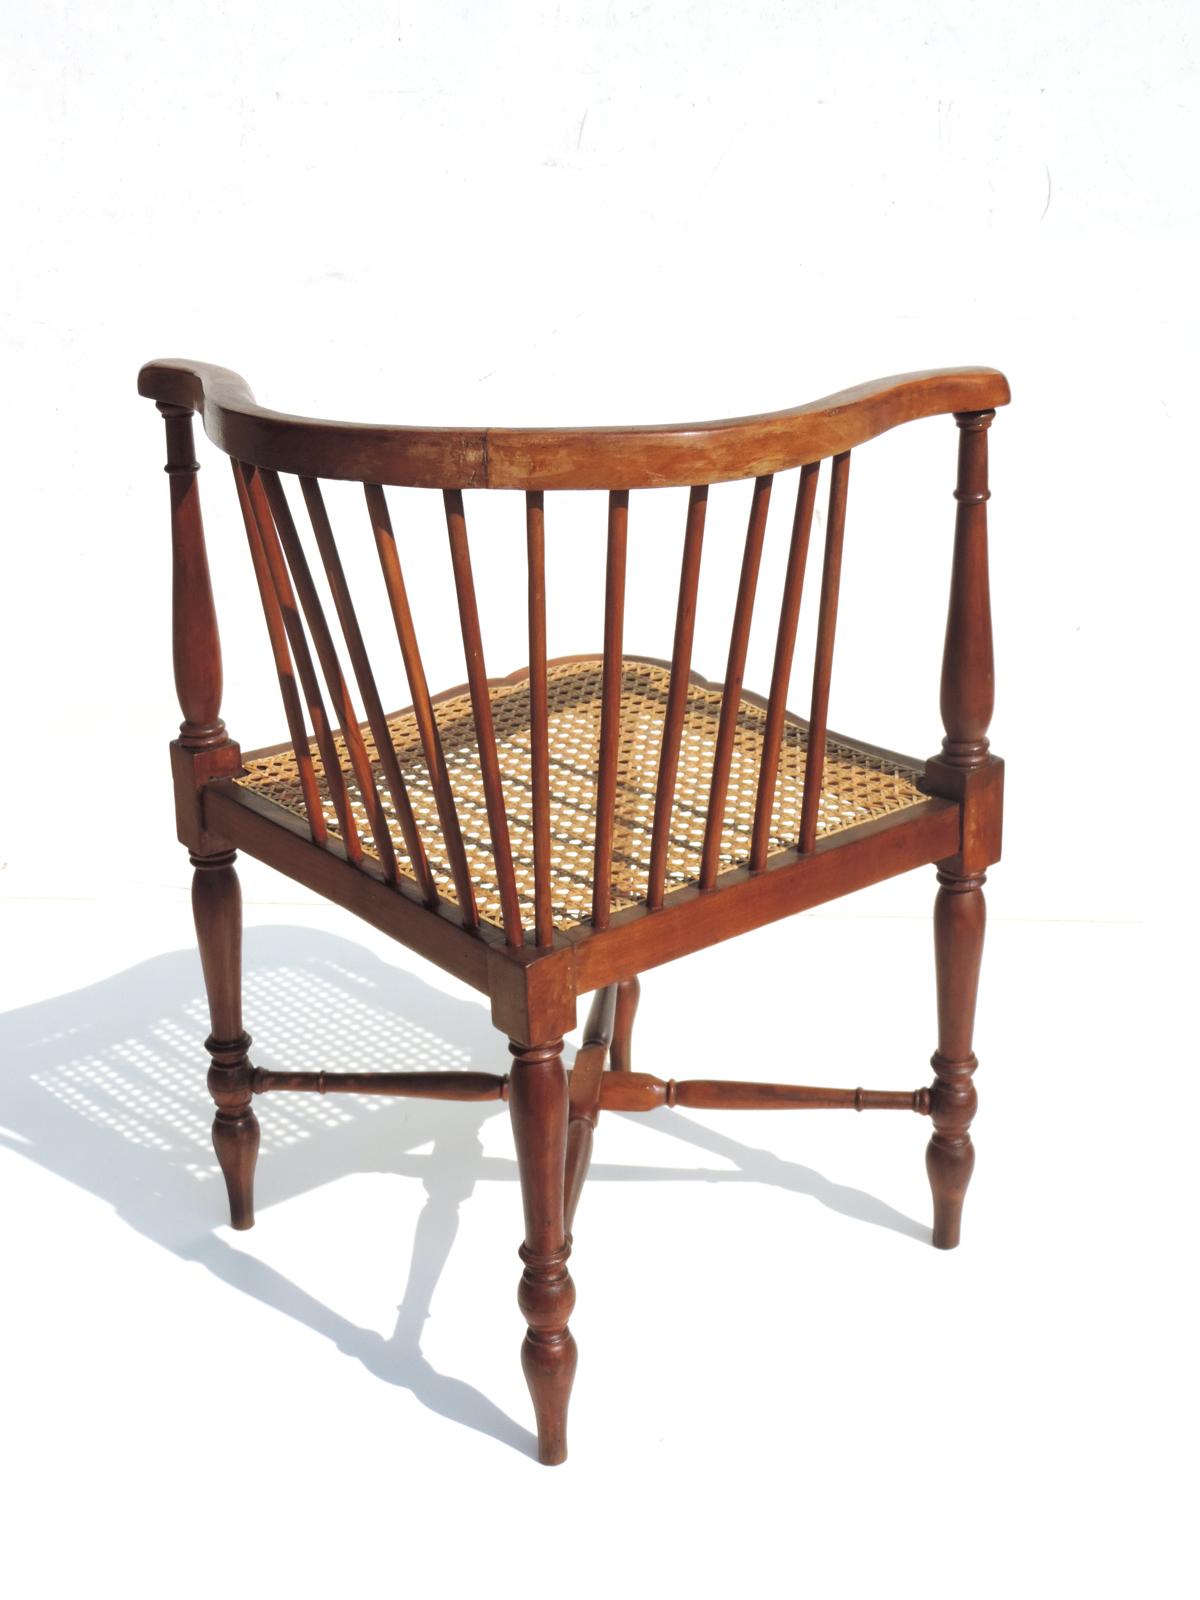 Adolf Loos F.O. Schmidt 1898-1900 Jugendstil Corner Chair For Sale 1